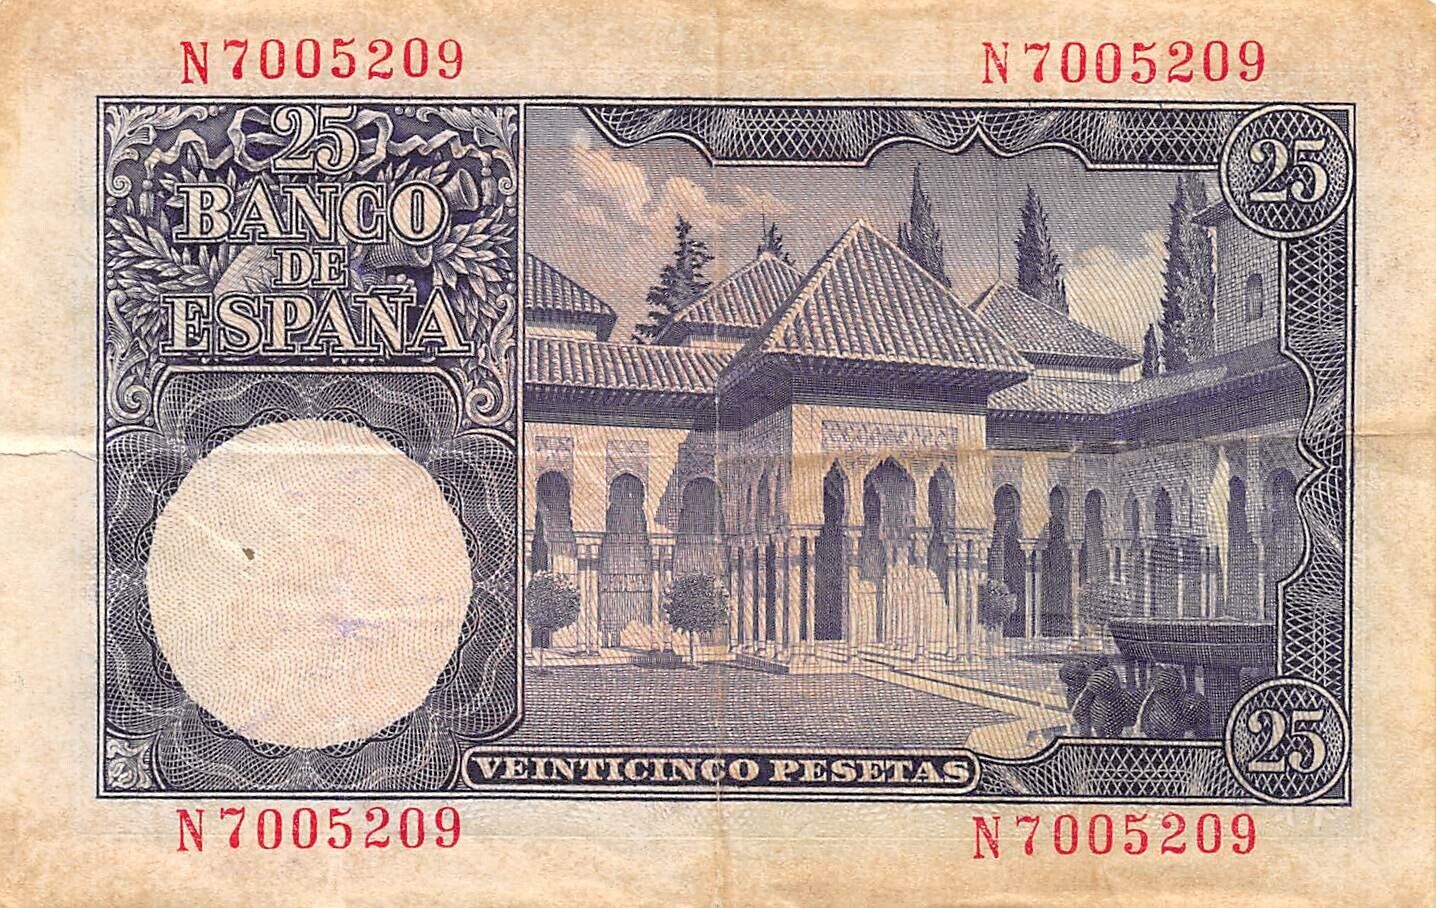 Spain  25  Pesetas  22.7.1954  Series N  Circulated Banknote Me16